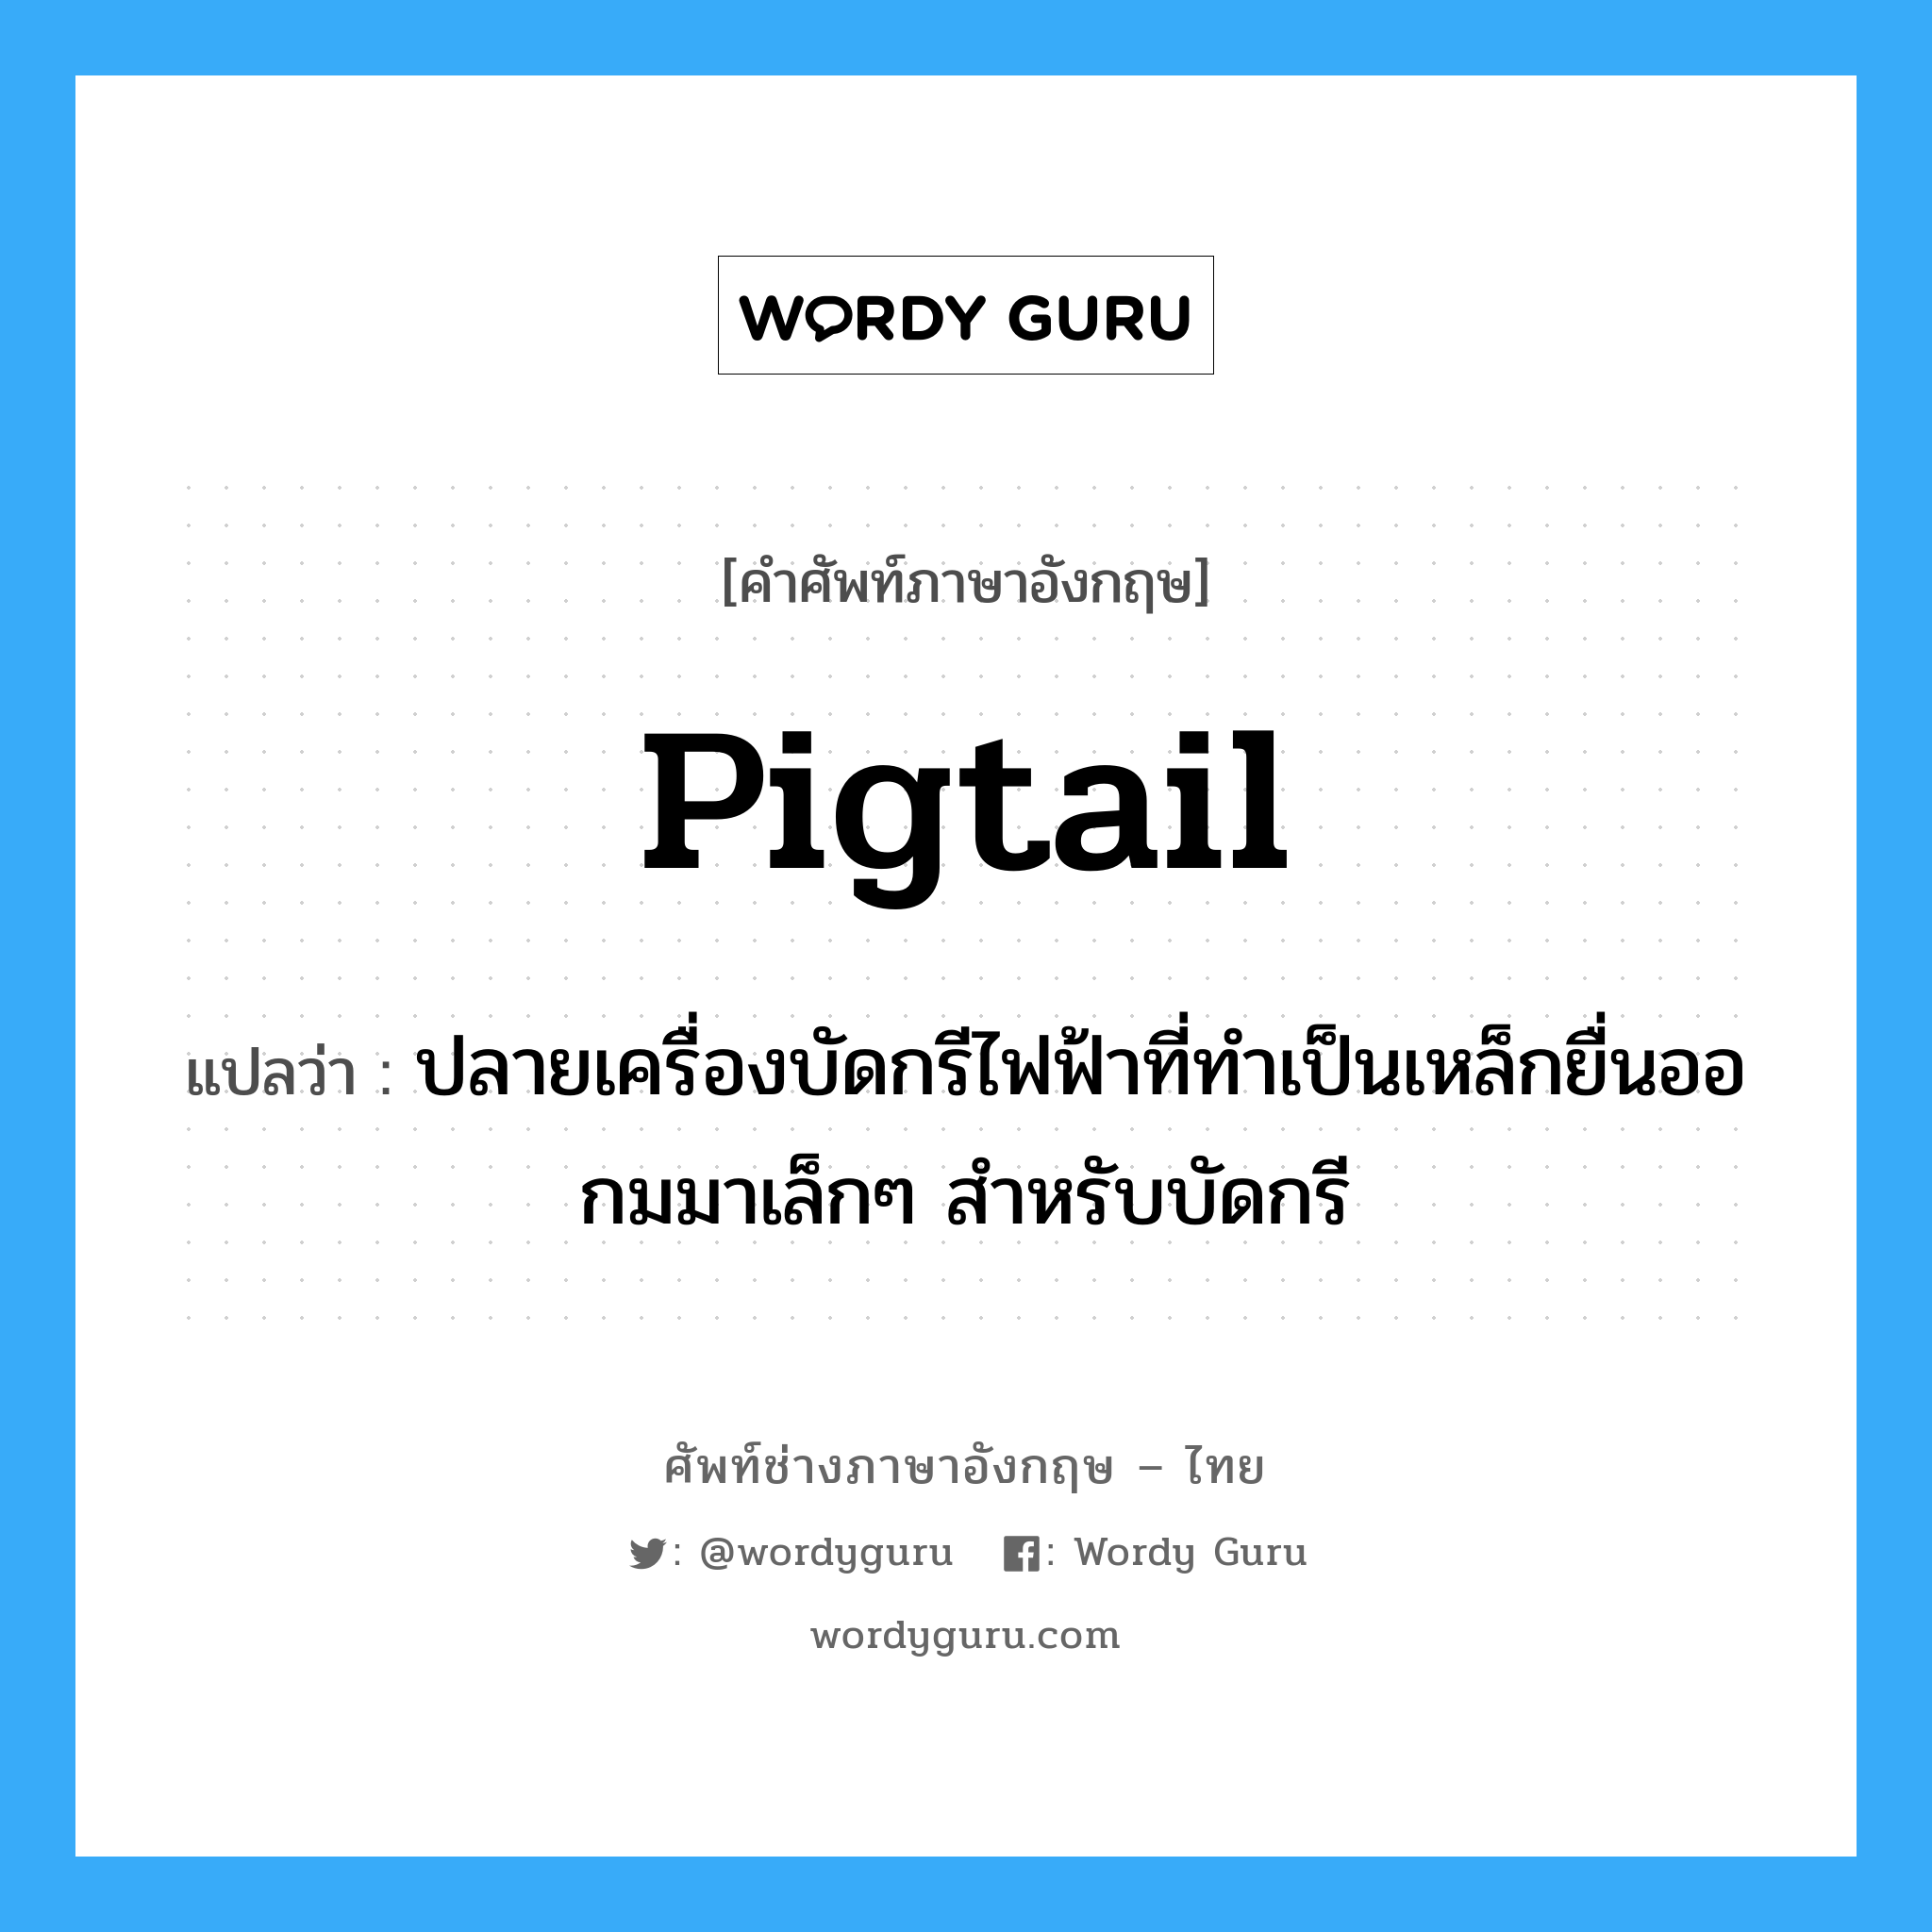 pigtail แปลว่า?, คำศัพท์ช่างภาษาอังกฤษ - ไทย pigtail คำศัพท์ภาษาอังกฤษ pigtail แปลว่า ปลายเครื่องบัดกรีไฟฟ้าที่ทำเป็นเหล็กยื่นออกมมาเล็กๆ สำหรับบัดกรี